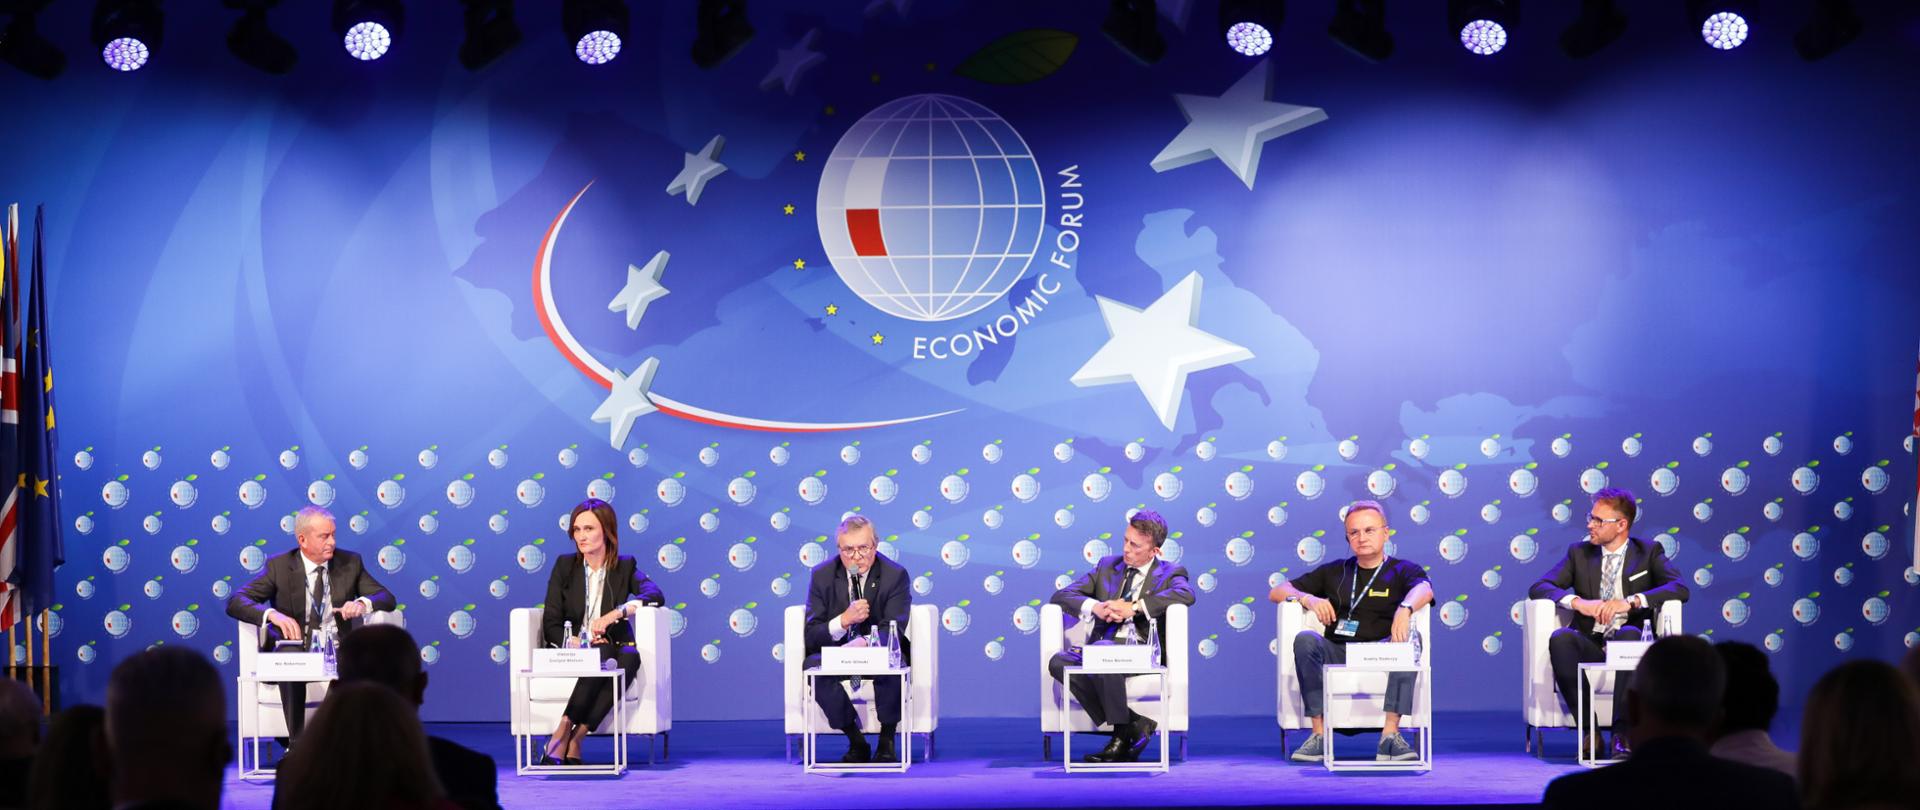 Wicepremier Piotr Gliński na Forum Ekonomicznym w Karpaczu: „Wobec obecnych wyzwań konieczna jest europejska jedność”, fot. Danuta Matloch